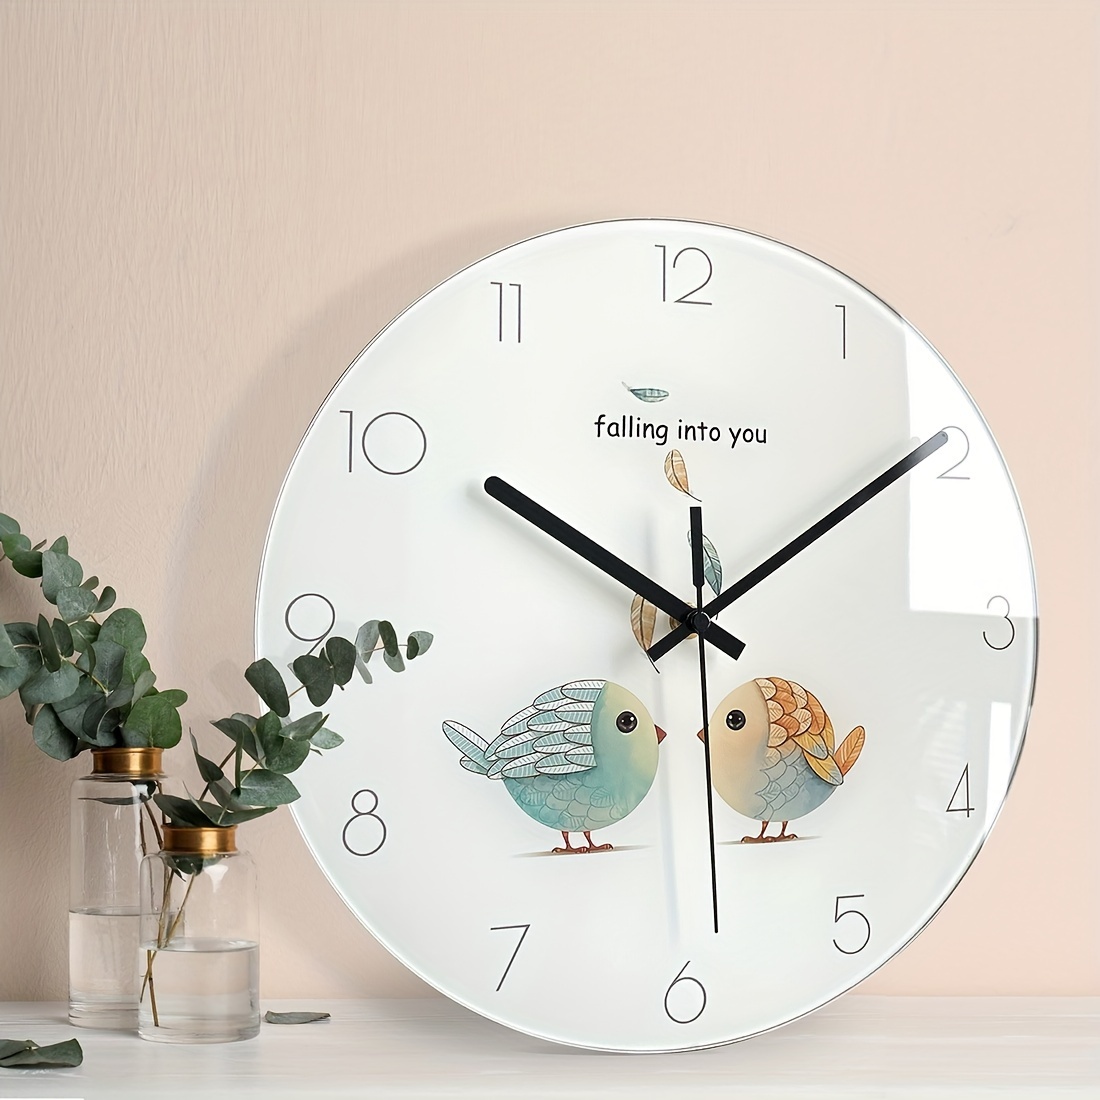  Reloj de cuco, reloj de pared de cuco con péndulo, reloj de  pájaro, voz de pájaro natural o llamada de cuco, reloj de cuarzo péndulo de  cuco para decoración del hogar